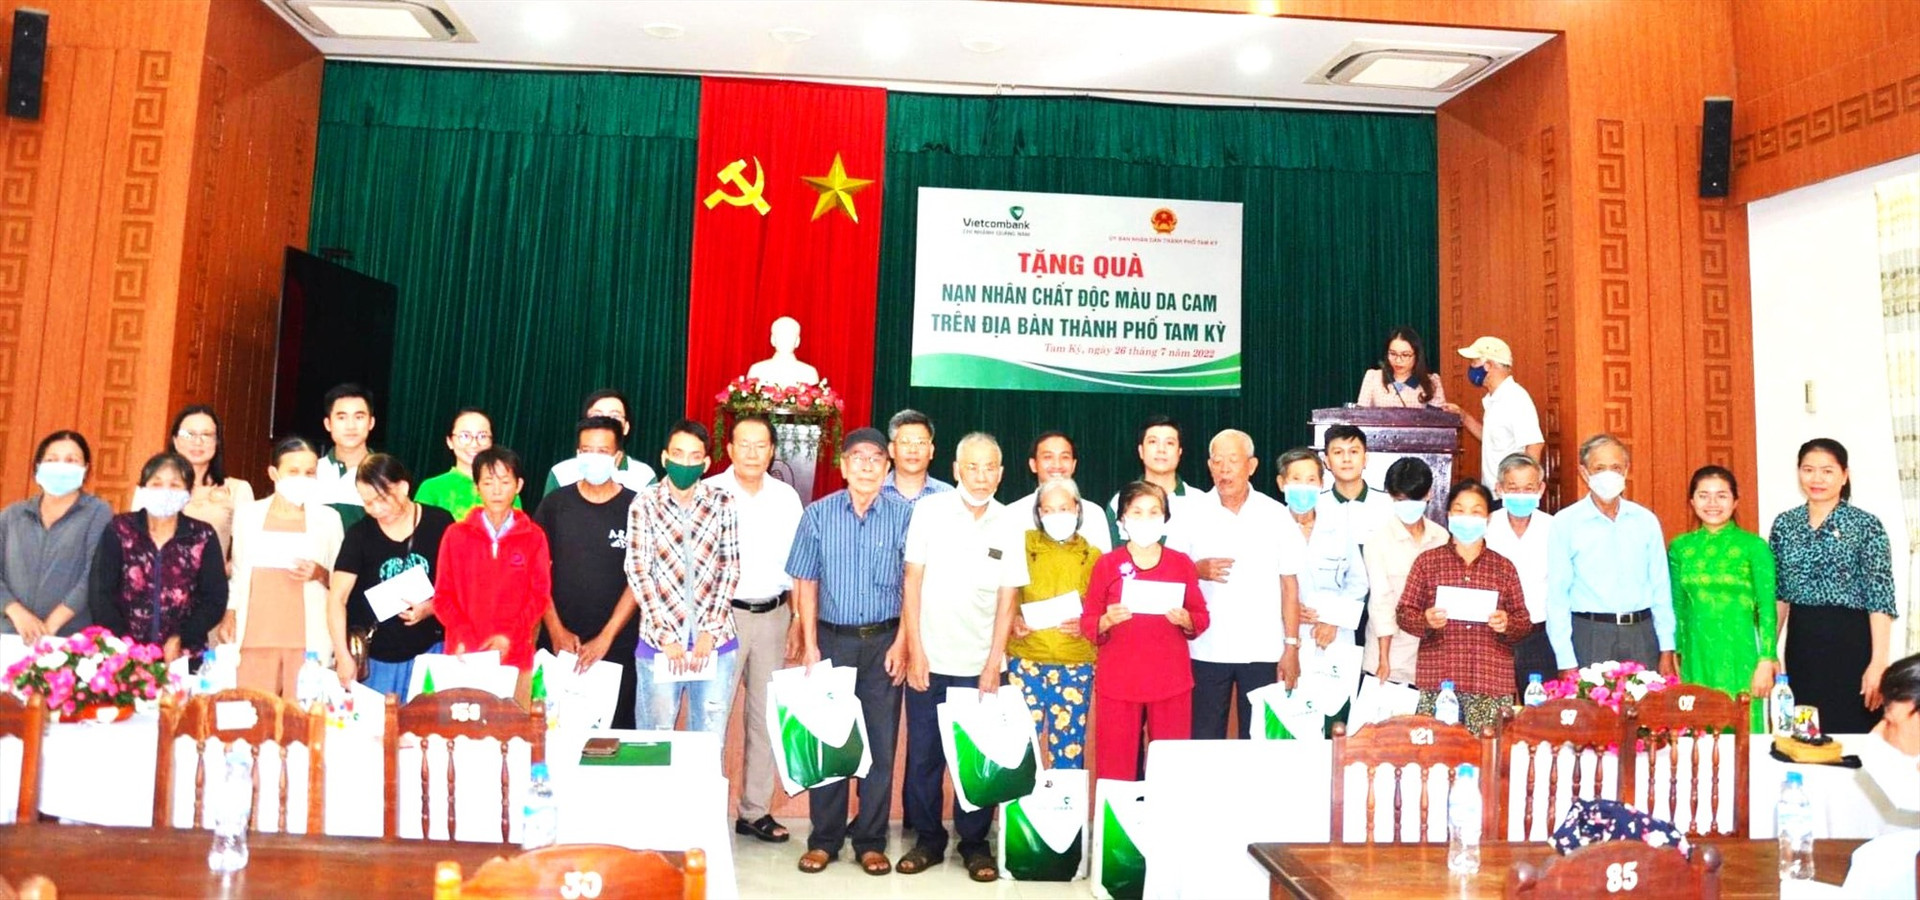 Ngân hàng Vietcombank Quảng Nam tặng quà nạn nhân chất độc da cam trên địa bàn thành phố Tam Kỳ năm 2022.